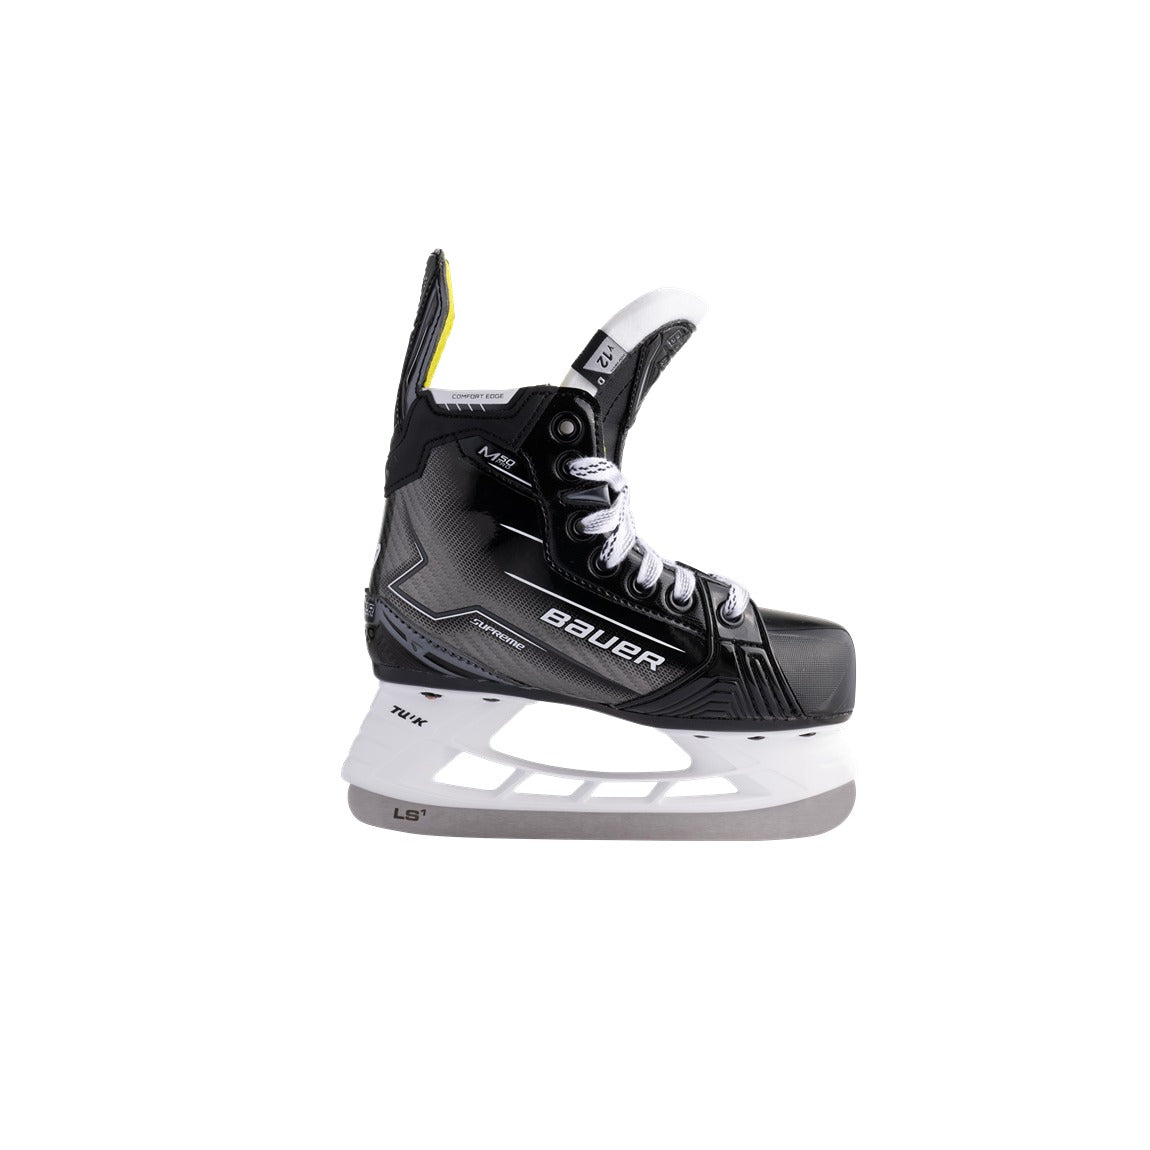 Bauer Supreme M50 Pro Hockey Skates - Youth